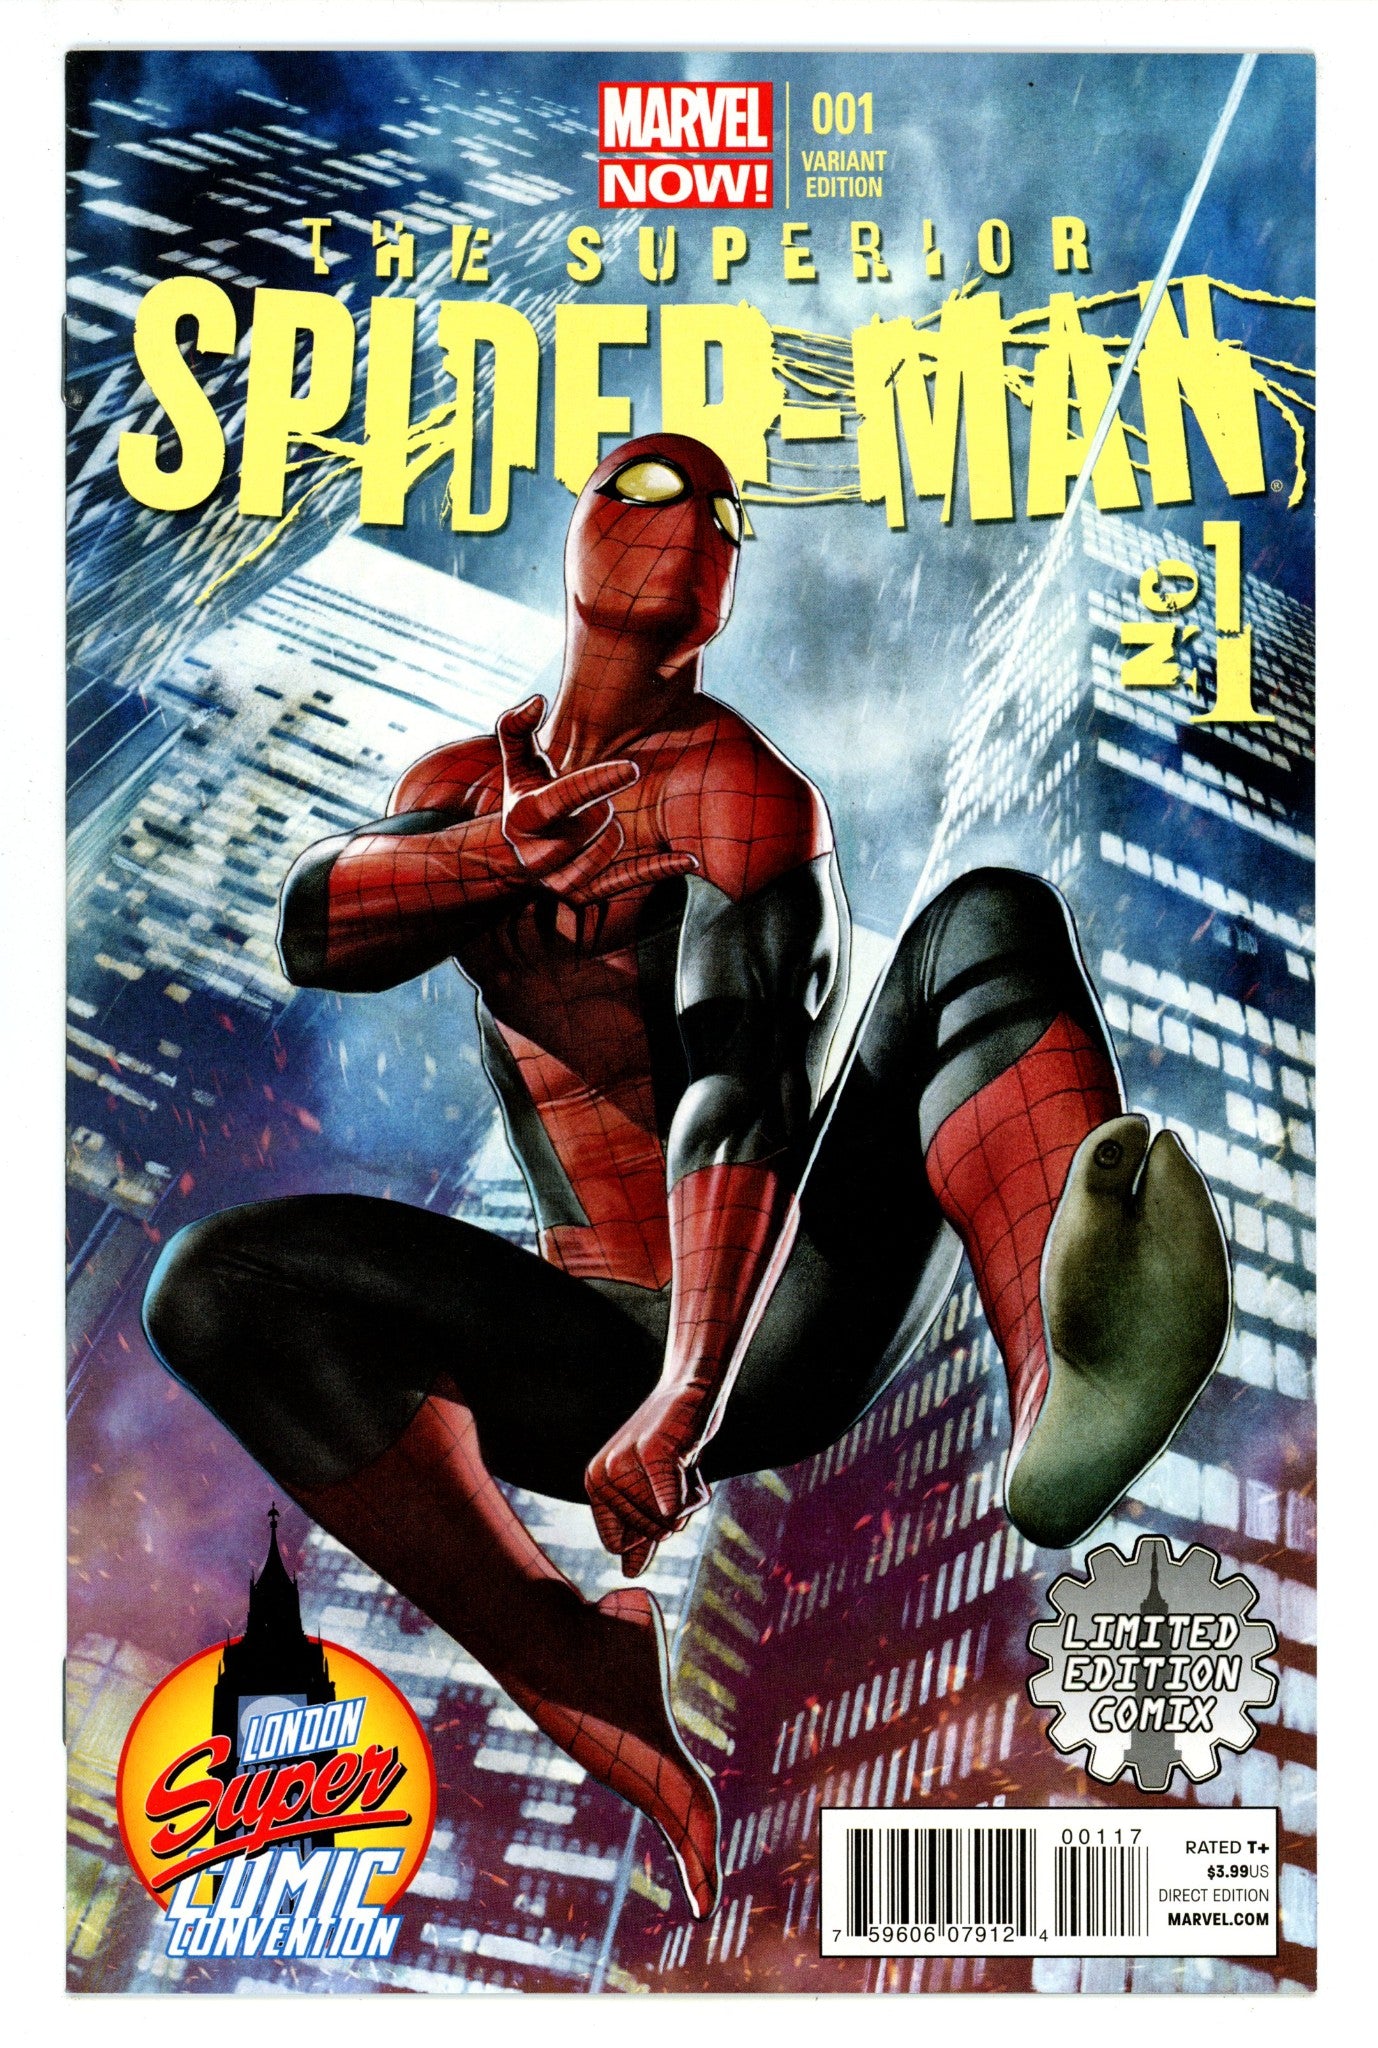 Superior Spider-Man Vol 1 1 VF/NM (9.0) (2013) Granov Variant 